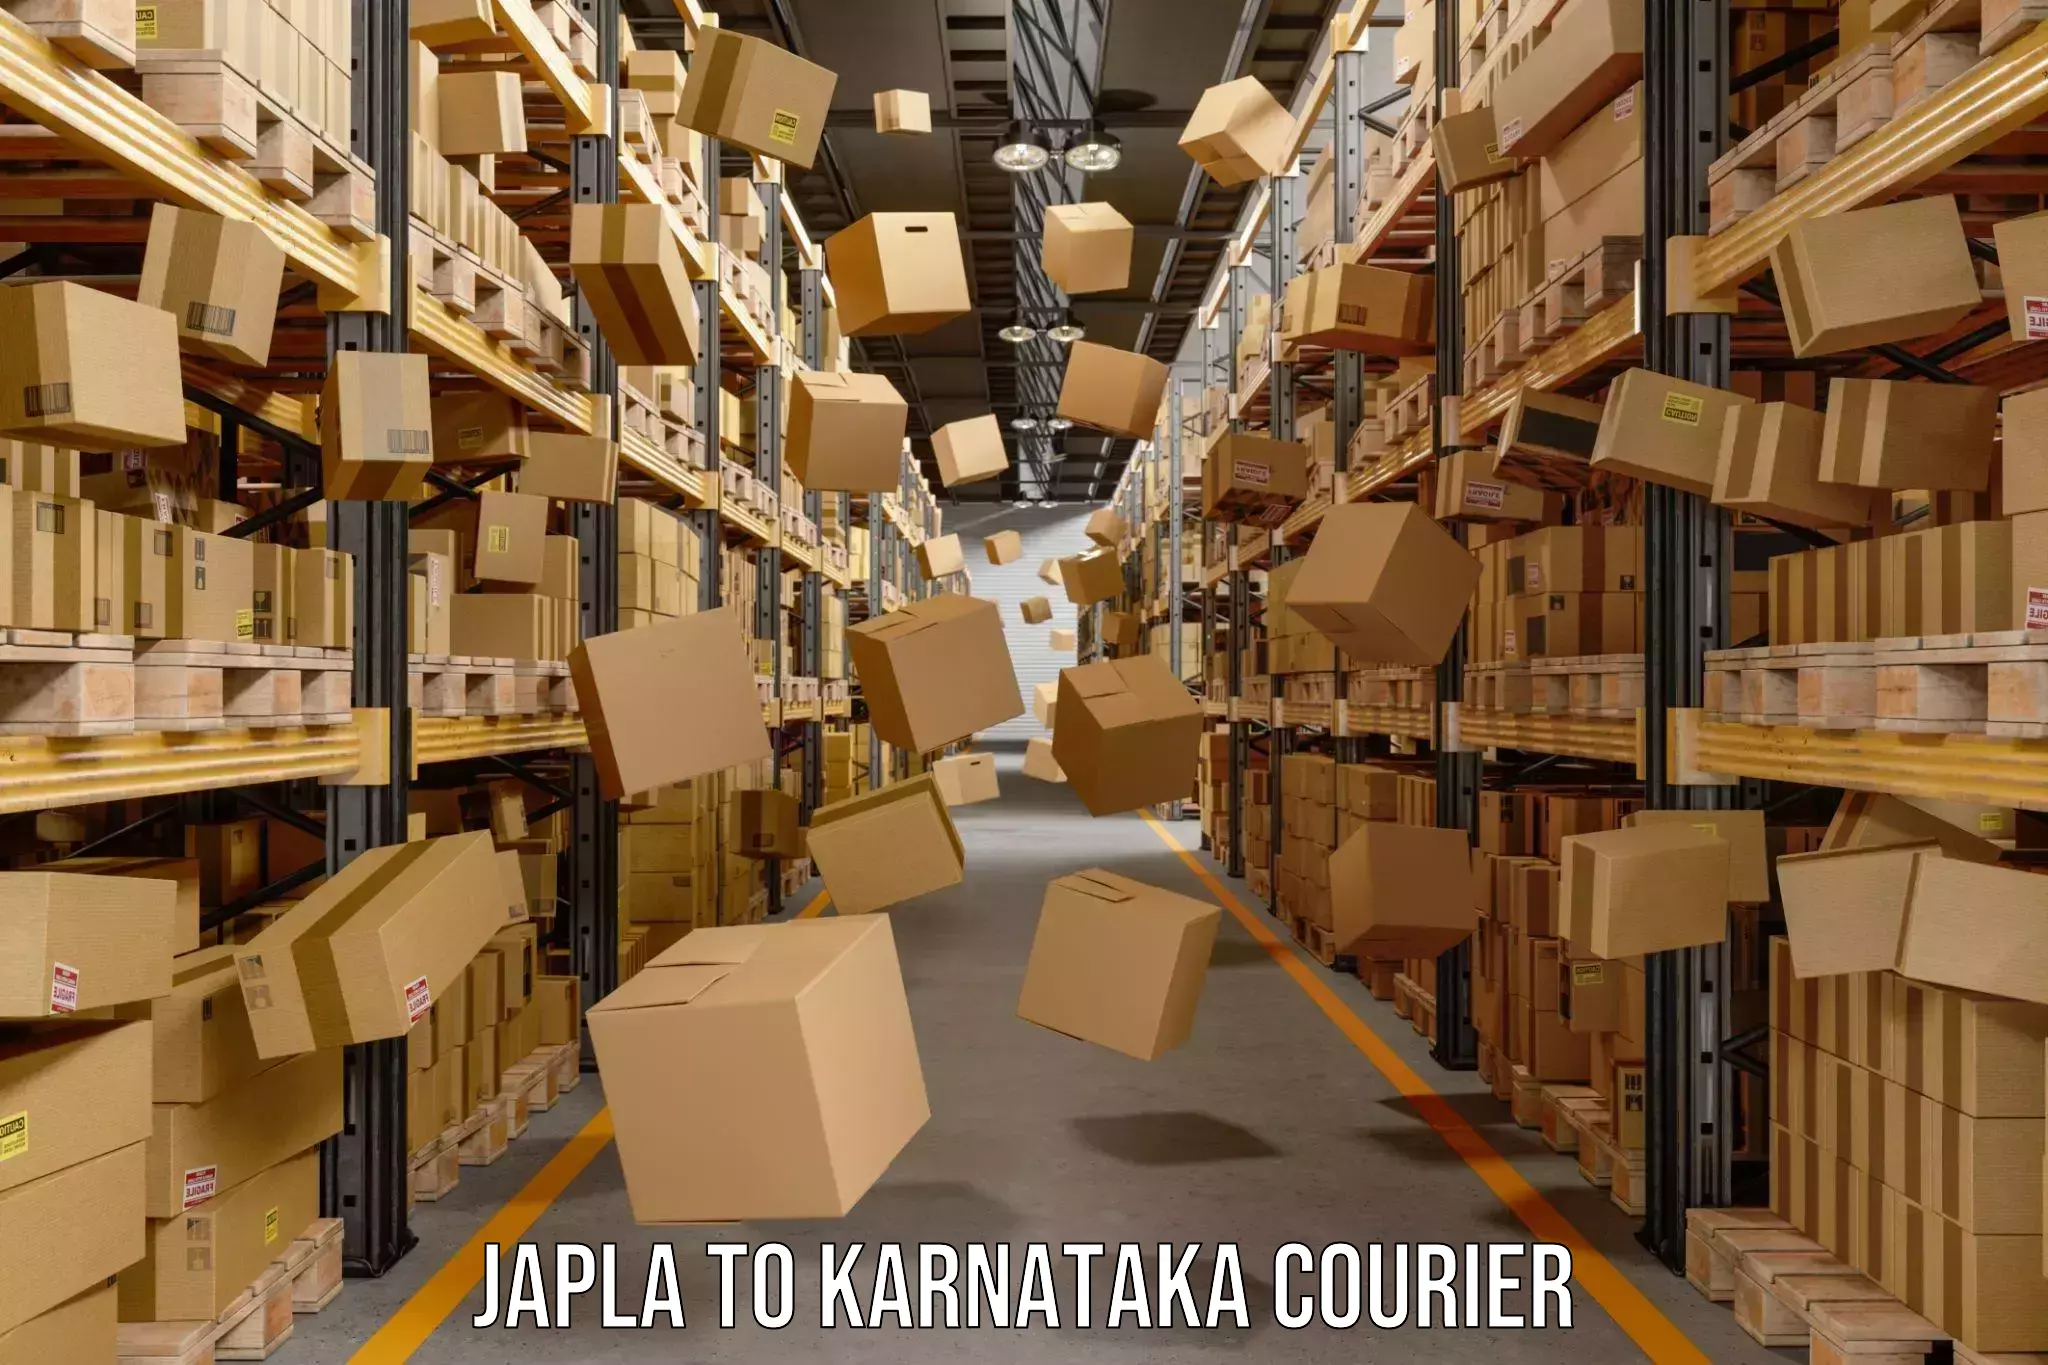 Nationwide shipping coverage Japla to Yelburga